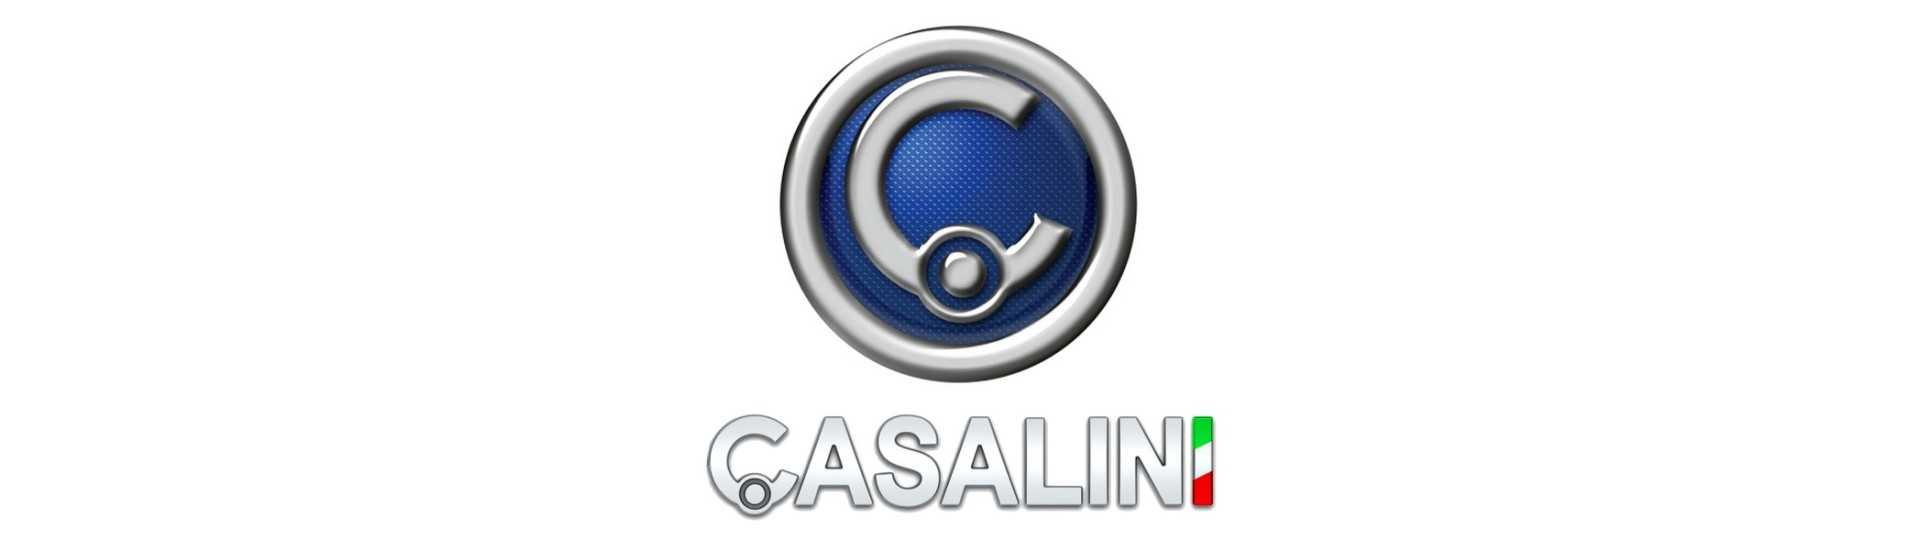 Motor variante al mejor precio para coche sin permiso Casalini